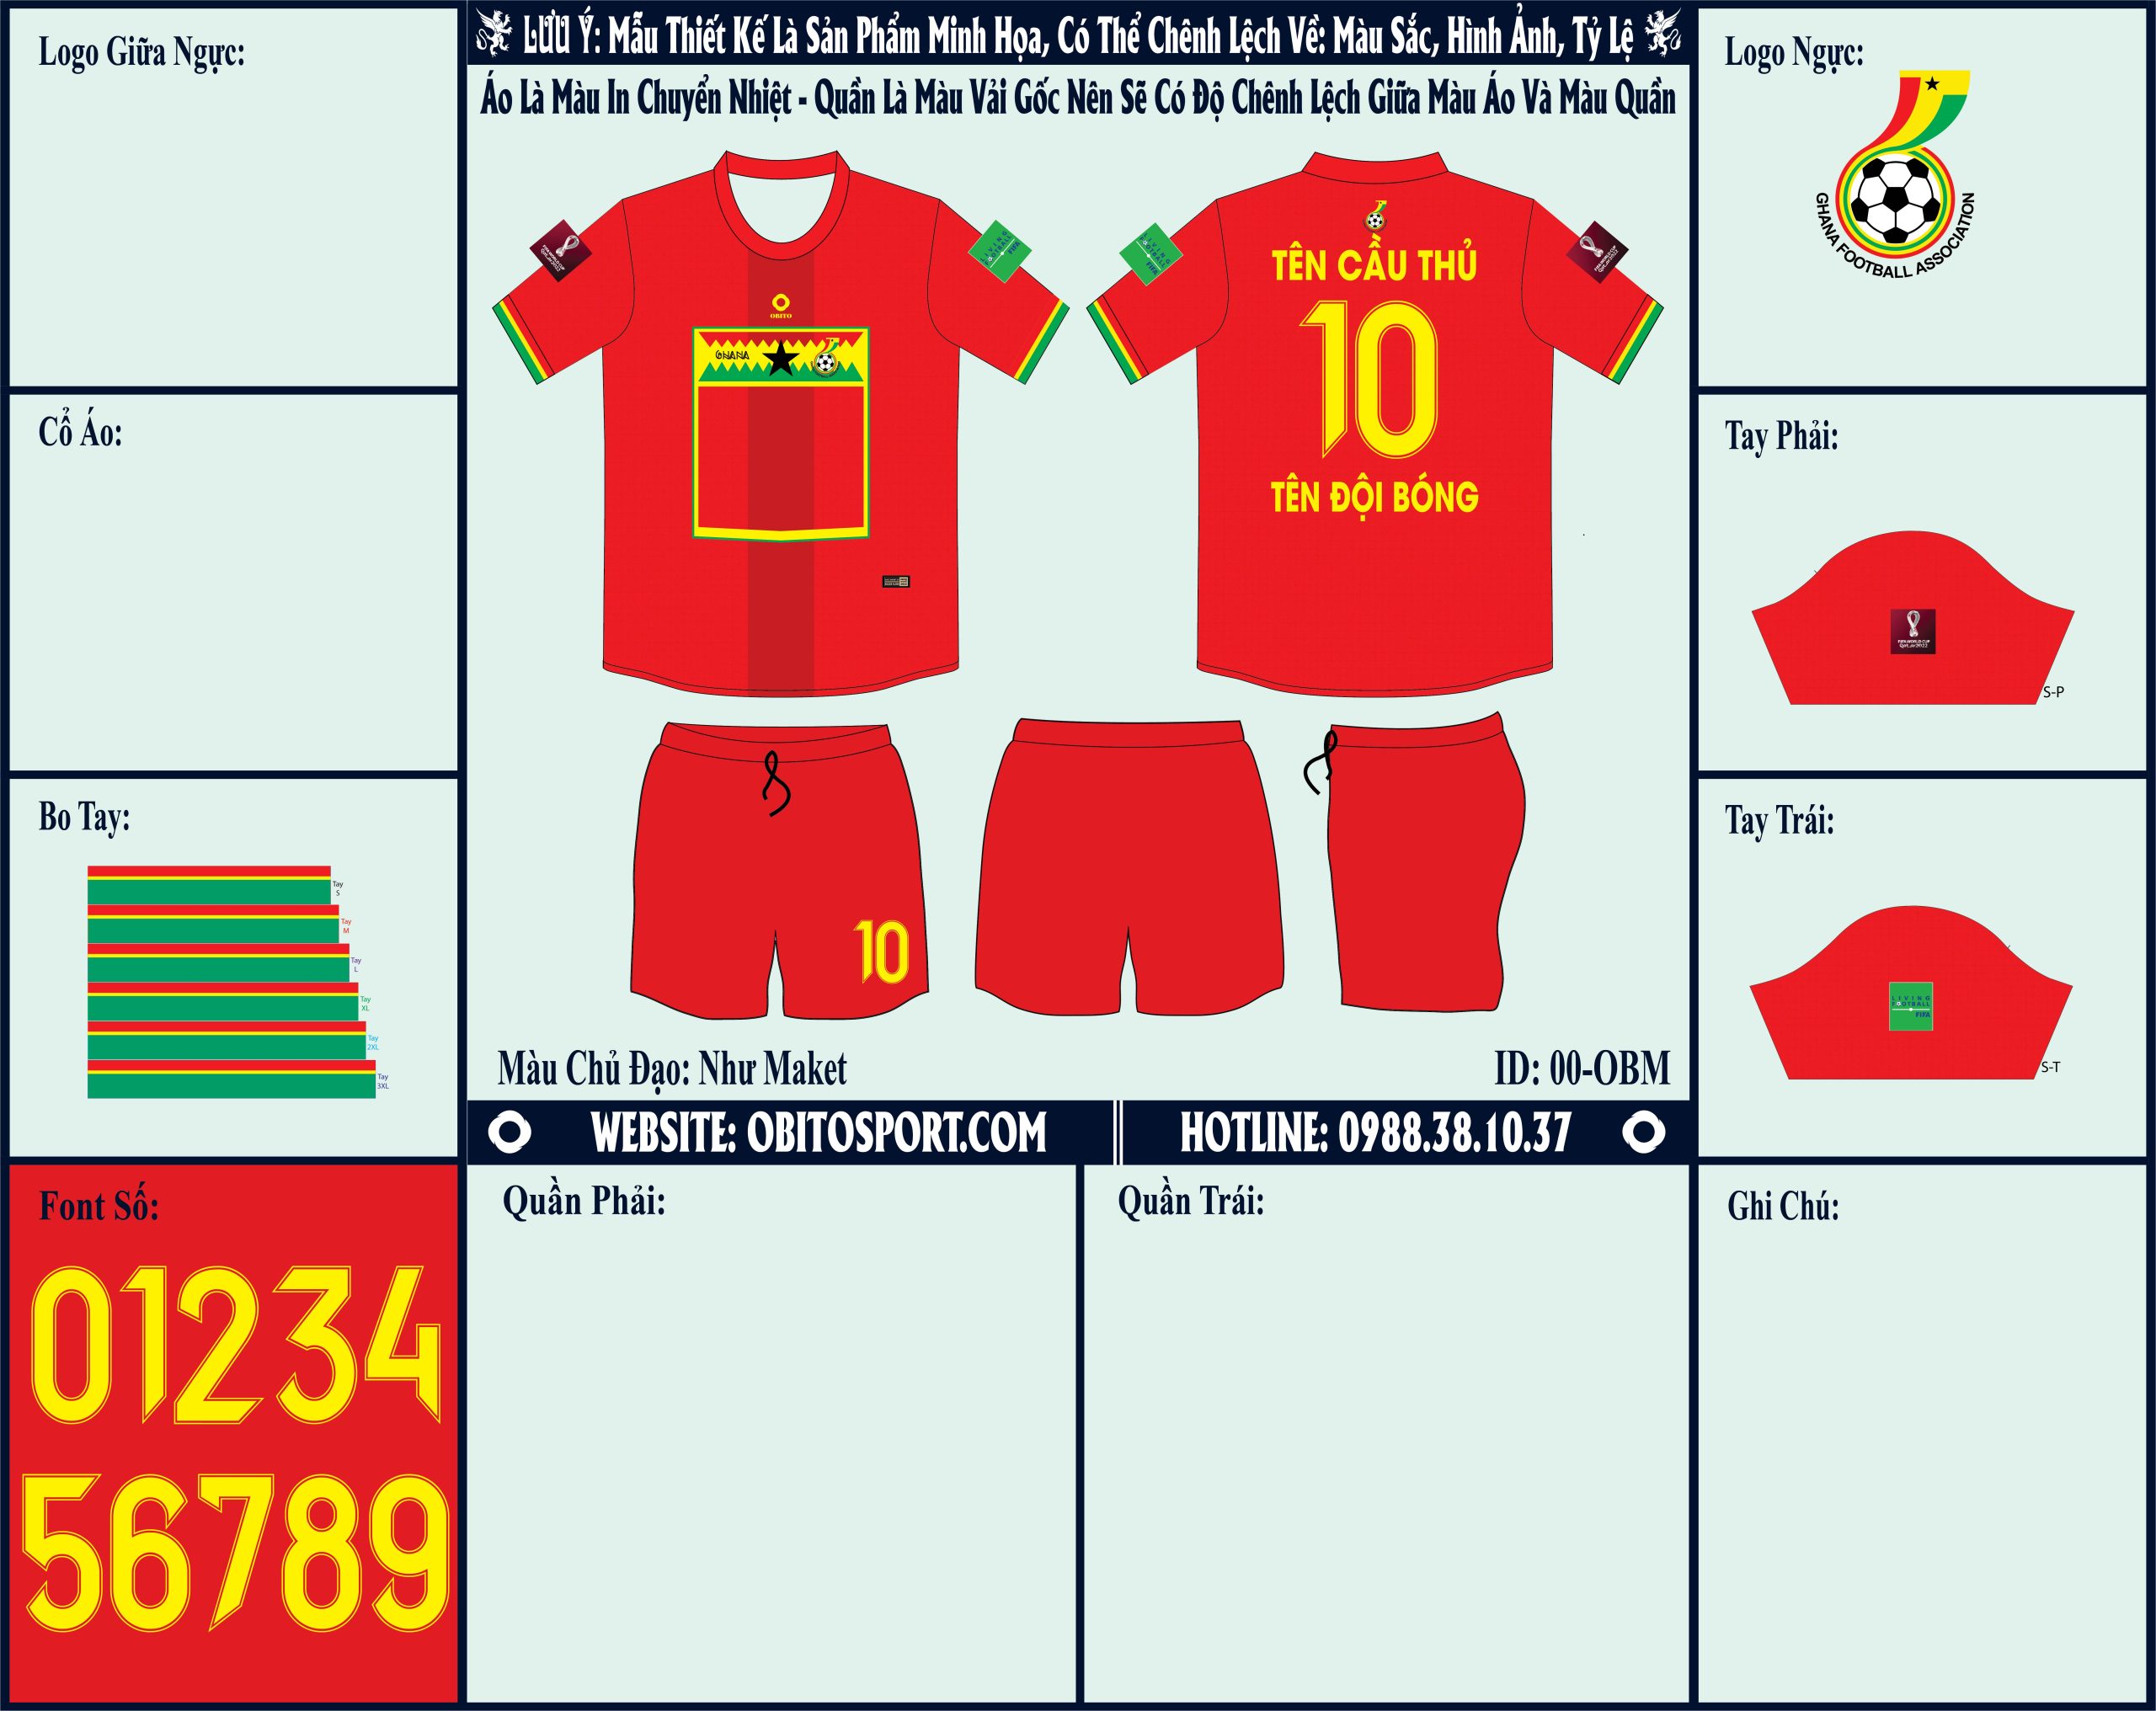 Obito Sport vừa bổ sung thêm mẫu market áo đội tuyển Ghana sân khách World Cup 2022 nhằm giúp cho khách hàng dễ dàng lựa chọn được sản phẩm ưng ý nhất với mình. 